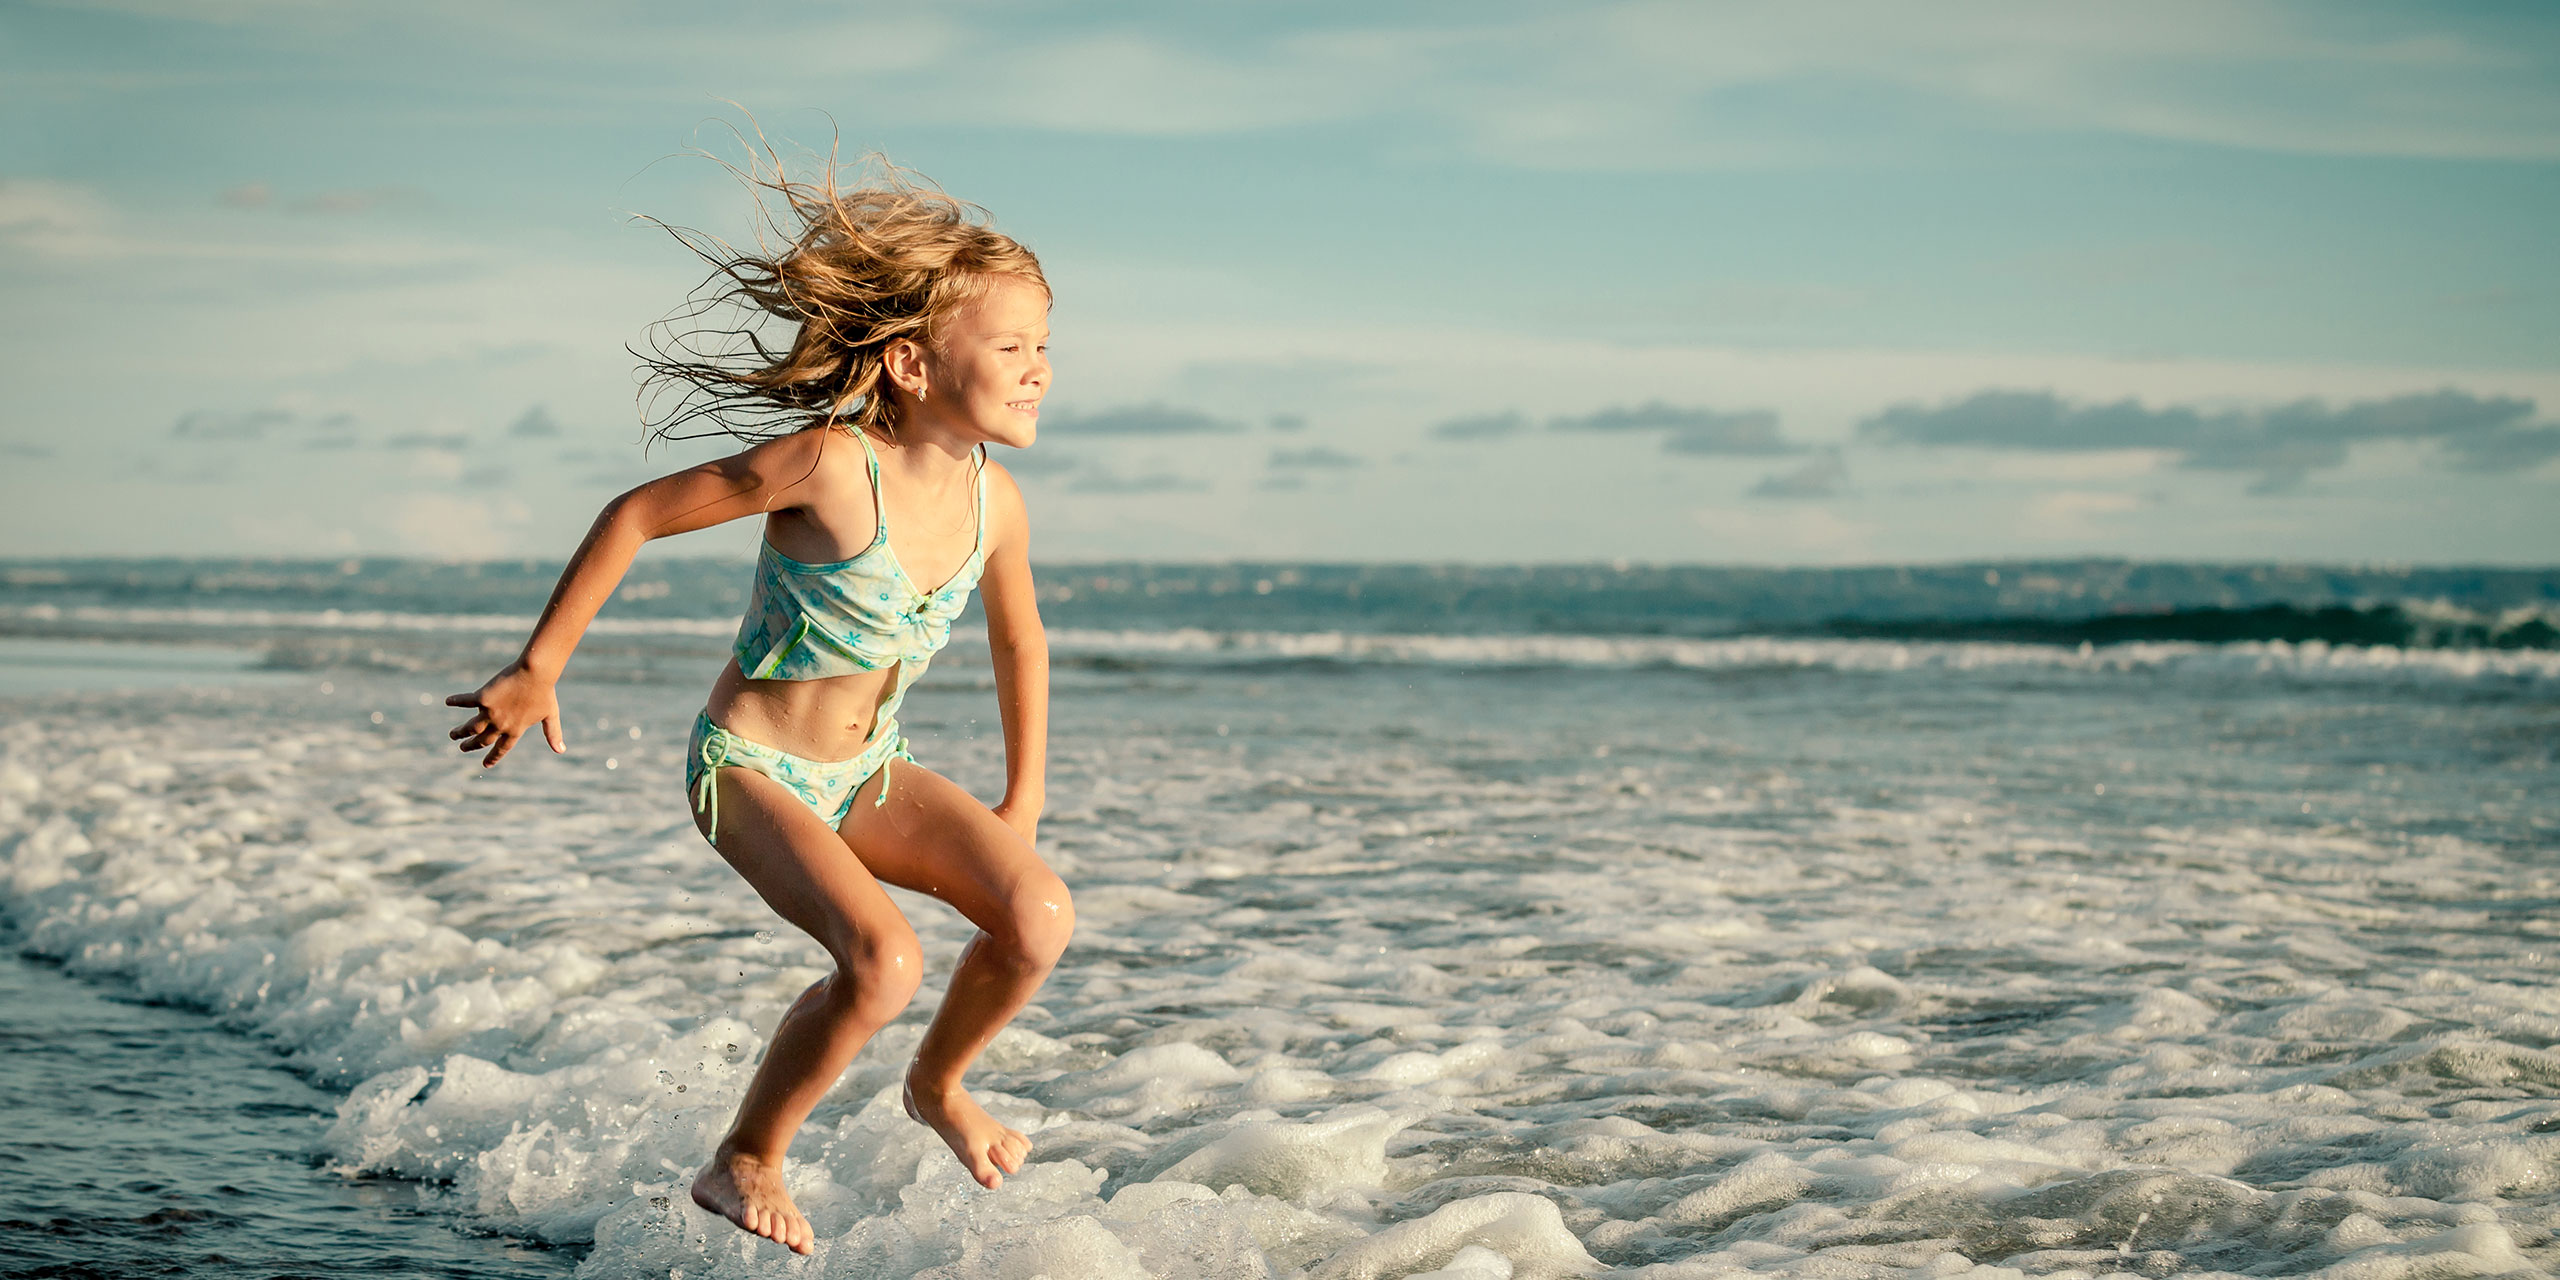 Little Girl Jumping in Ocean; Courtesy of altanaka/Shutterstock.com